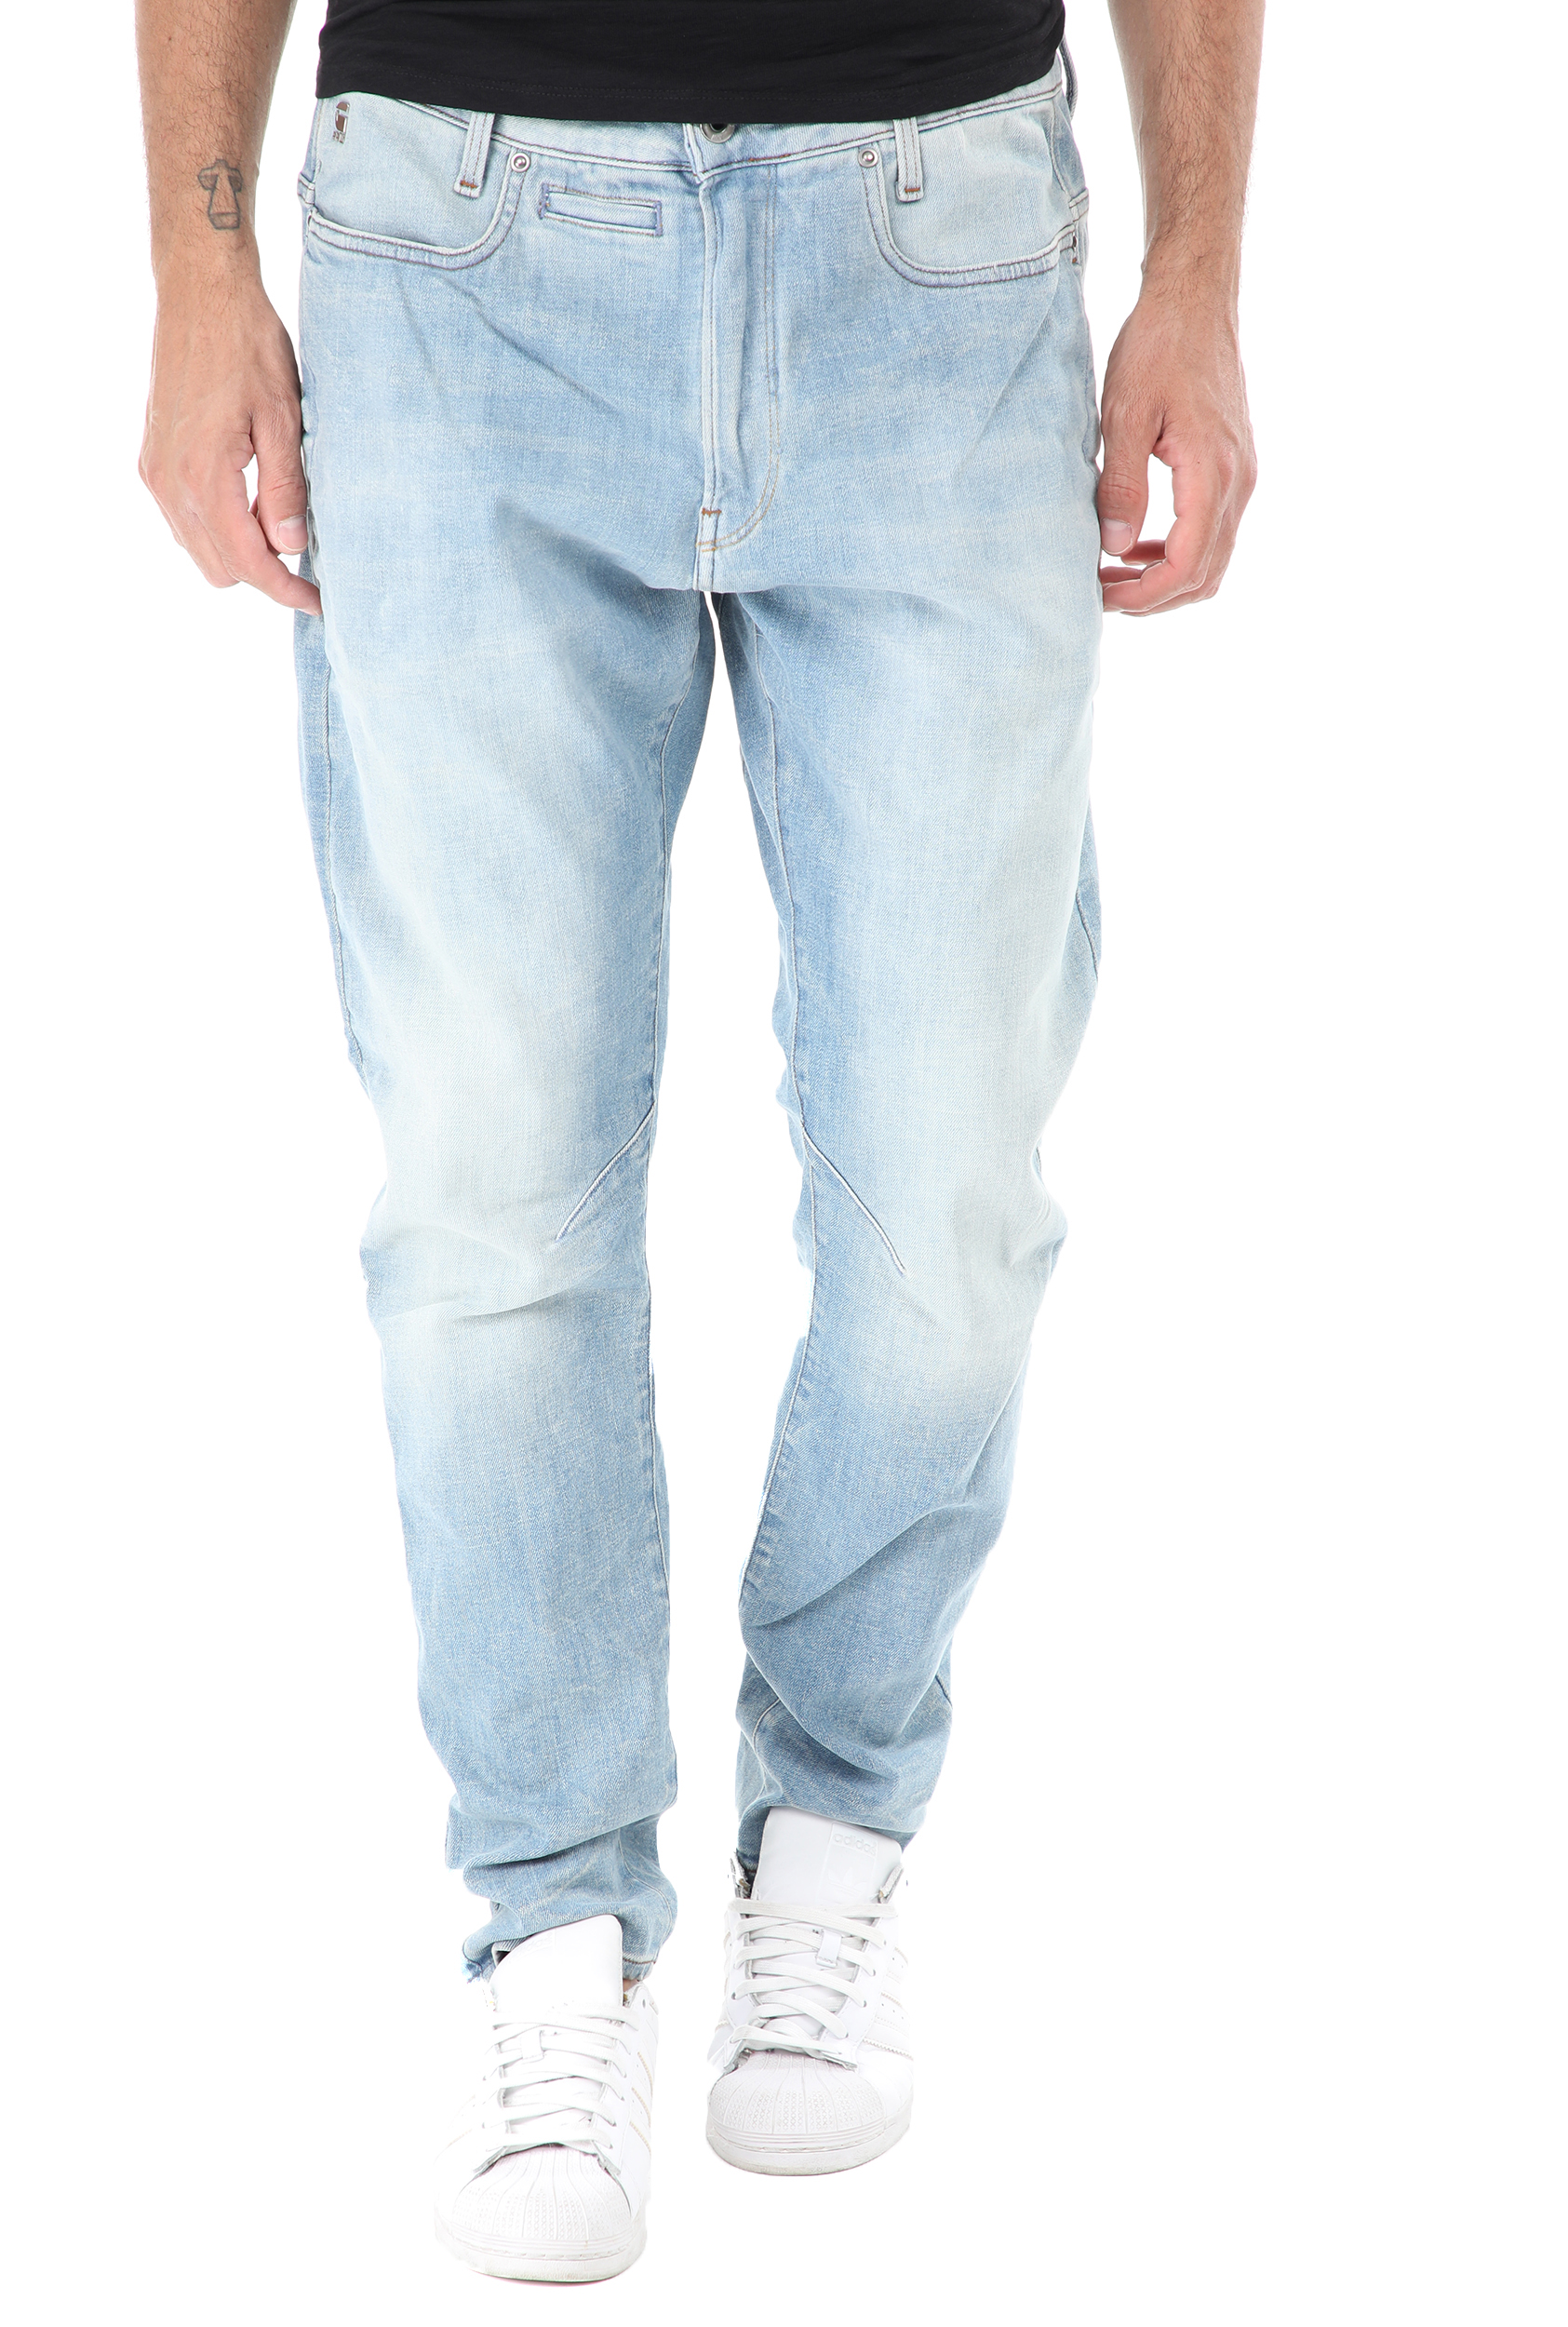 Ανδρικά/Ρούχα/Τζίν/Skinny G-STAR RAW - Ανδρικό jean παντελόνι G-STAR RAW D-Staq 3D Slim μπλε